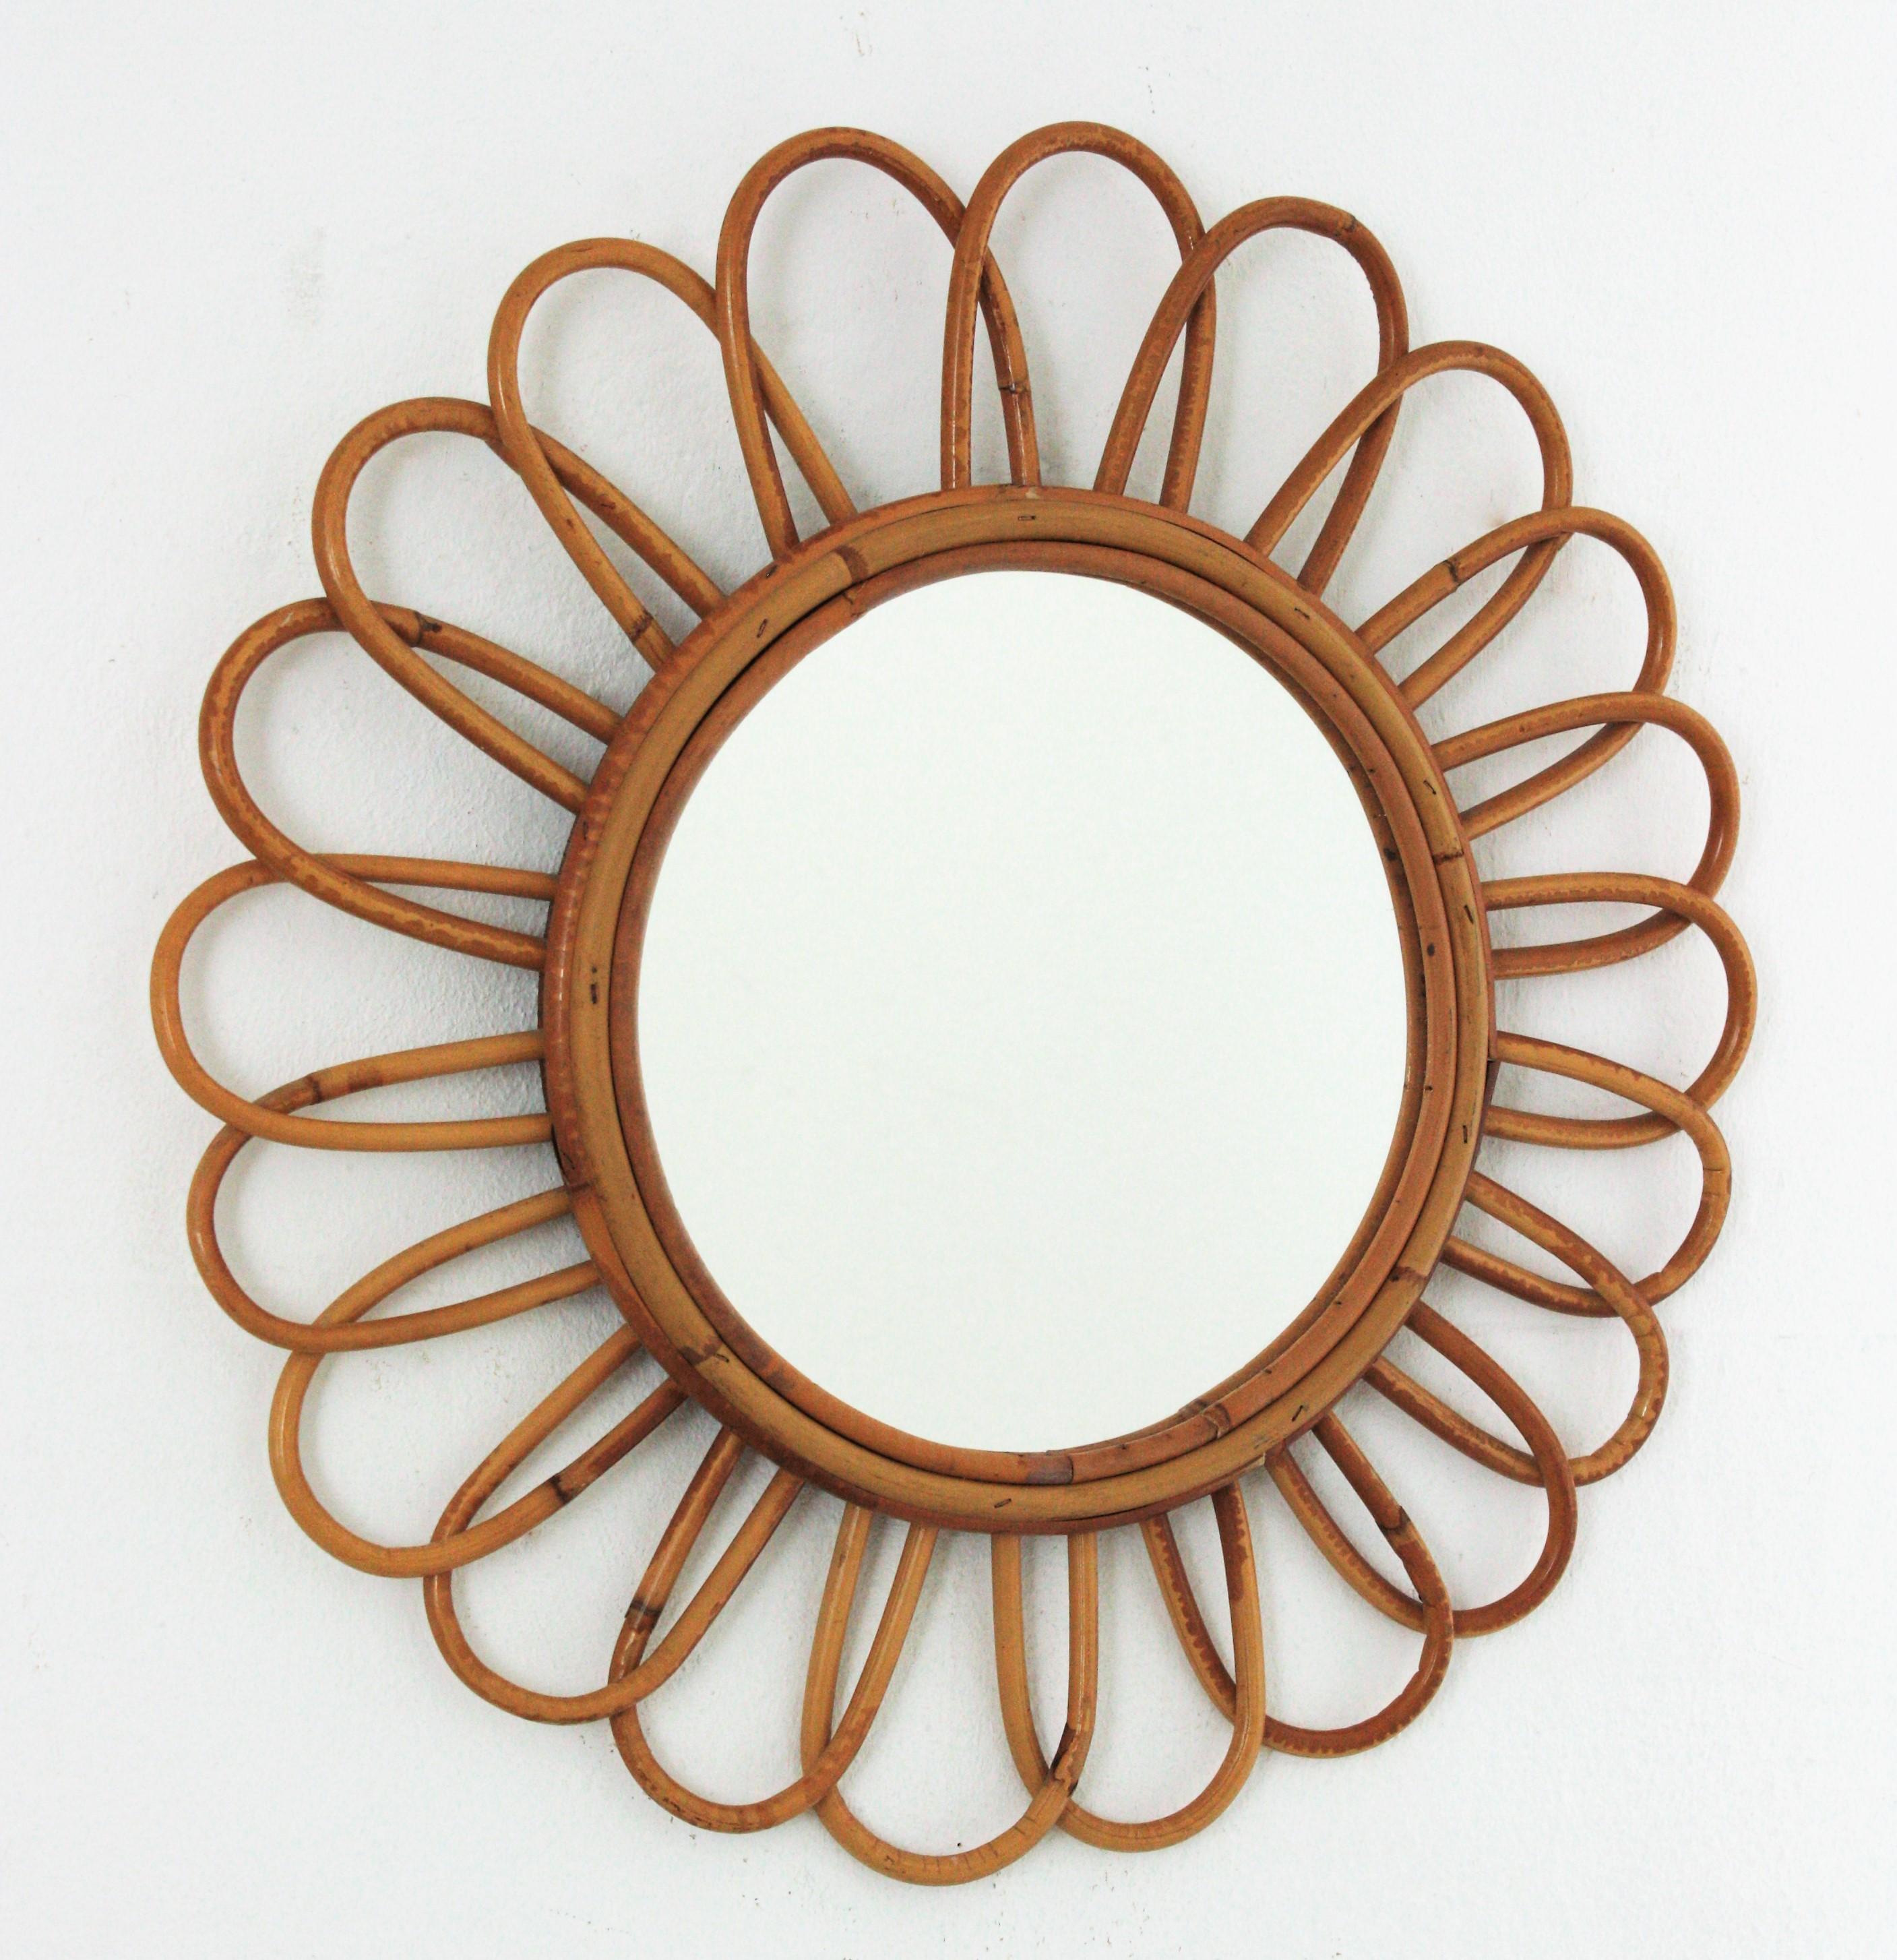 Wunderschöner, handgefertigter Spiegel in Form einer Rattanblume mit dem Geschmack der Mittelmeerküste. Frankreich, 1960er Jahre.
Dieses Stück ist in ausgezeichnetem Zustand.
Dieser Spiegel wird eine frische Ergänzung für ein Strandhaus, ein Haus